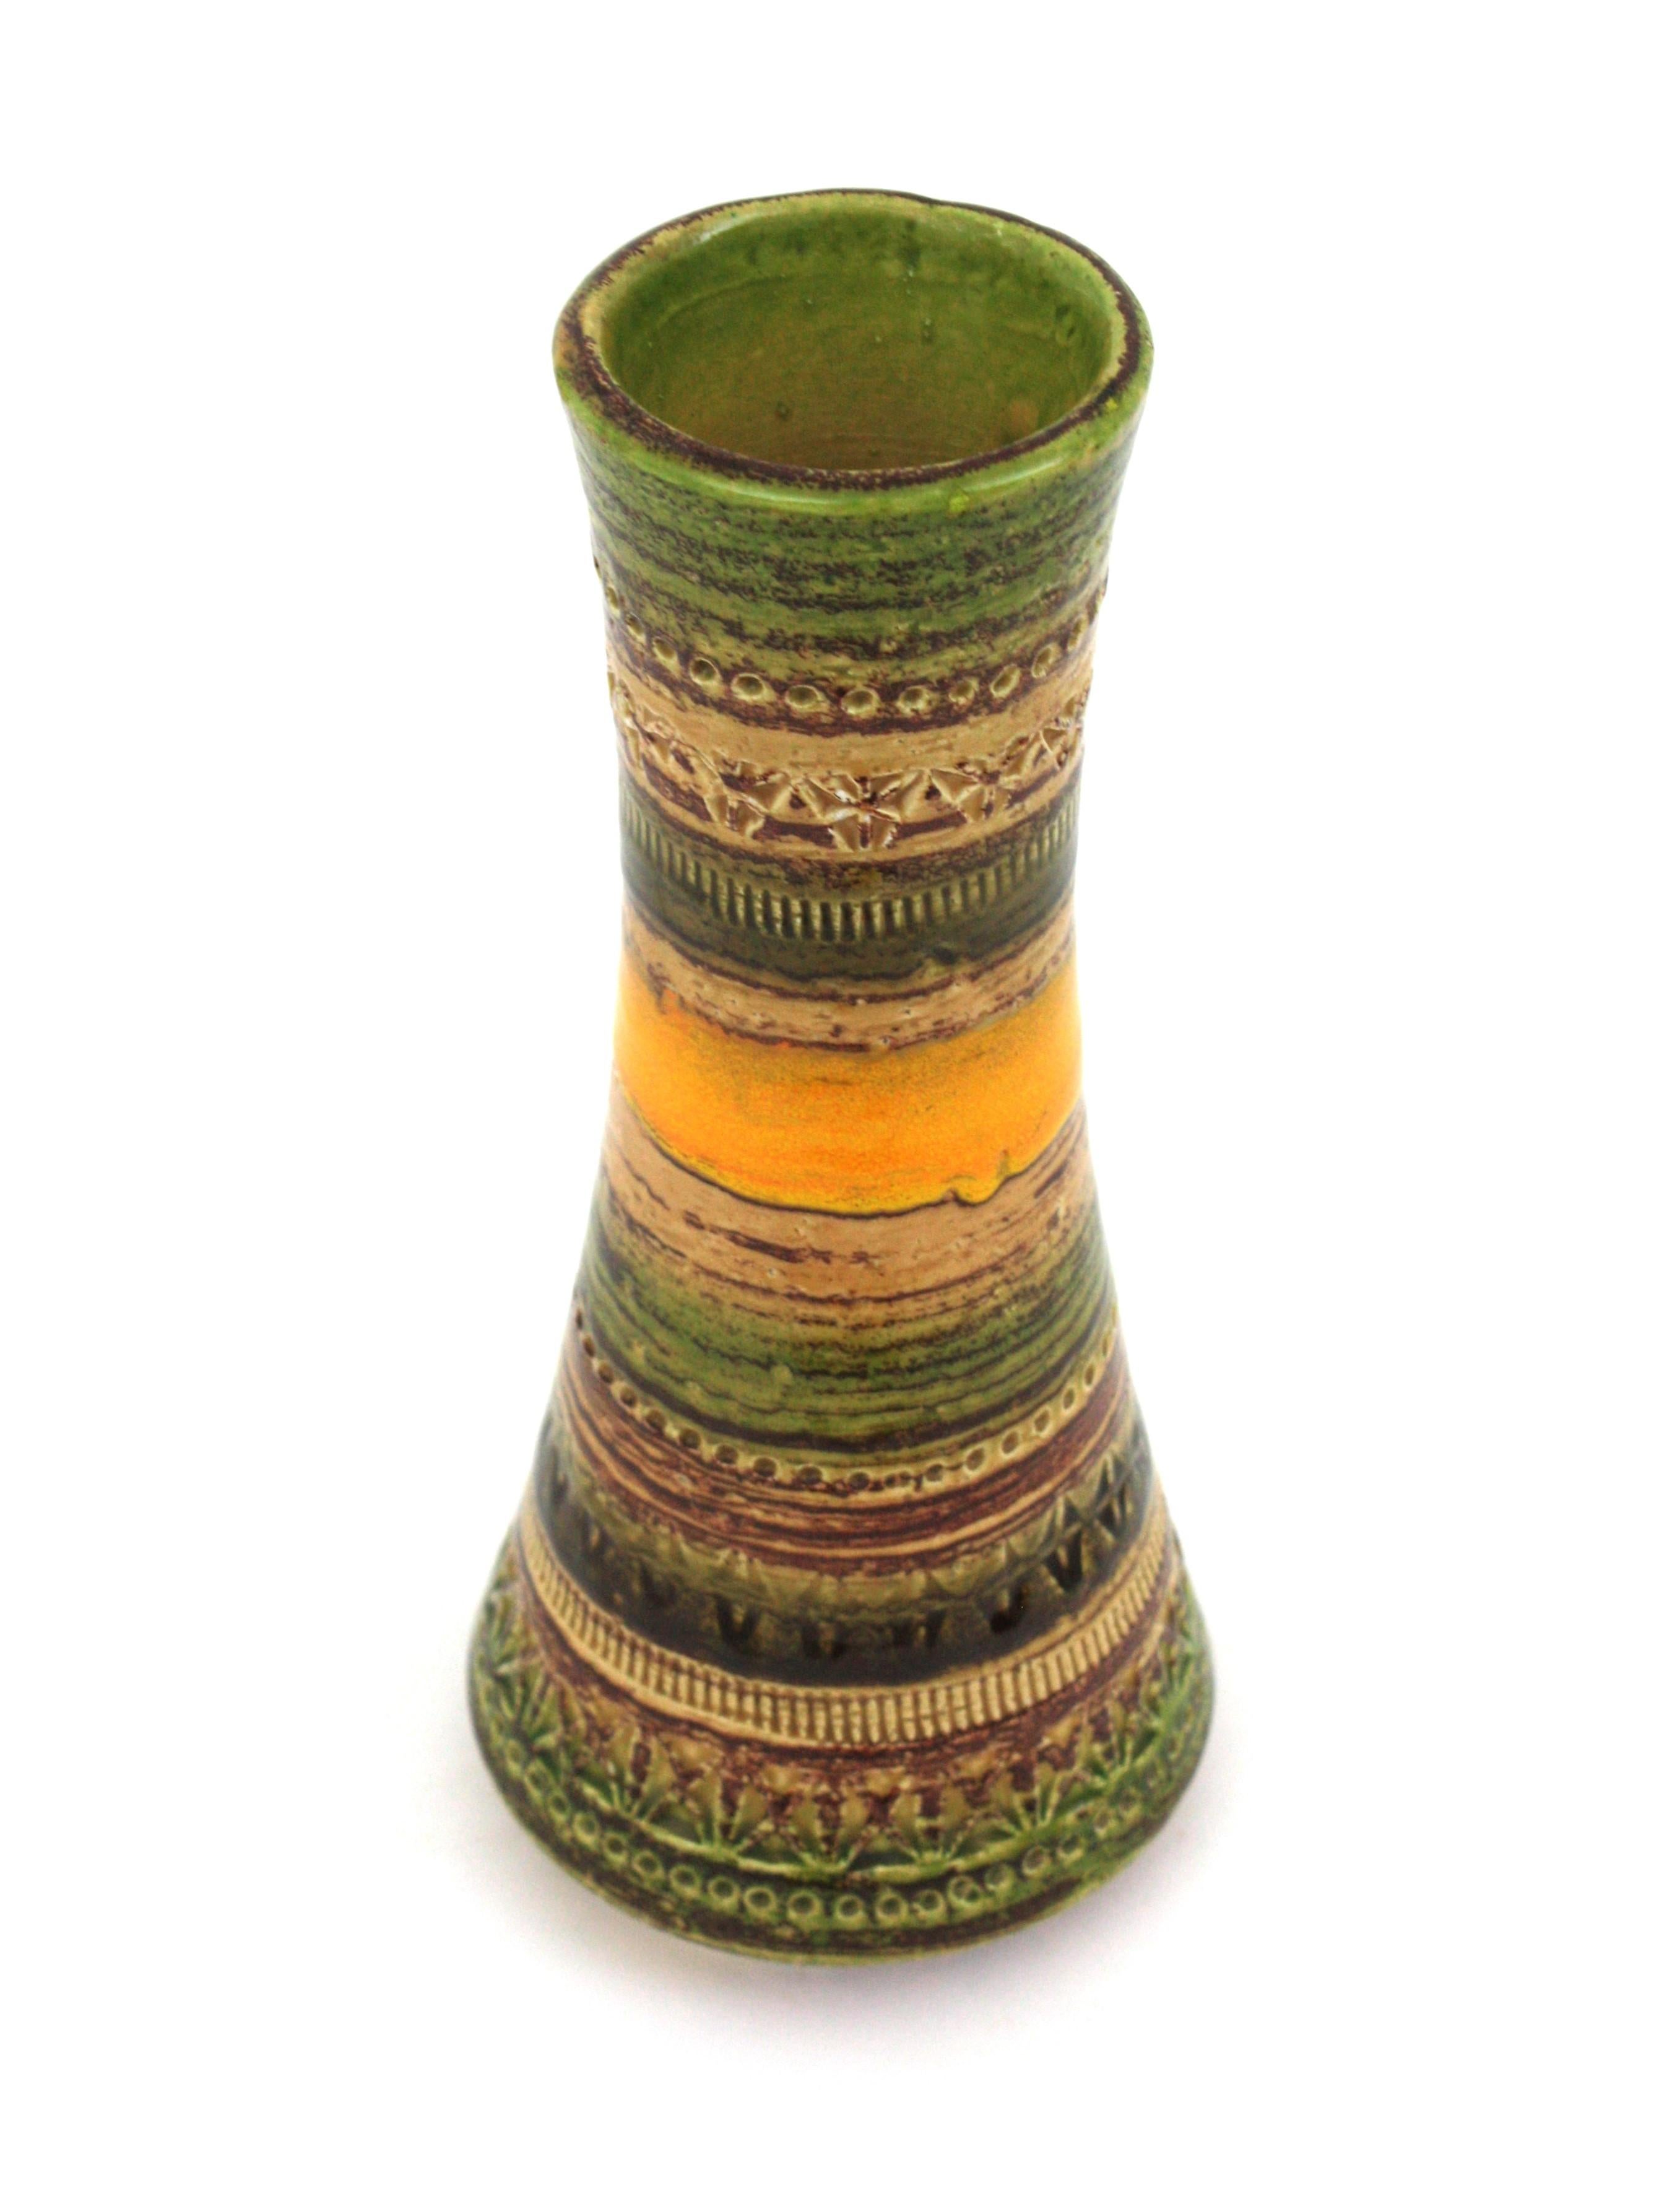 Bitossi Sahara Aldo Londi Cer Paoli Glazed Ceramic Vases, Italy, 1960s For Sale 2